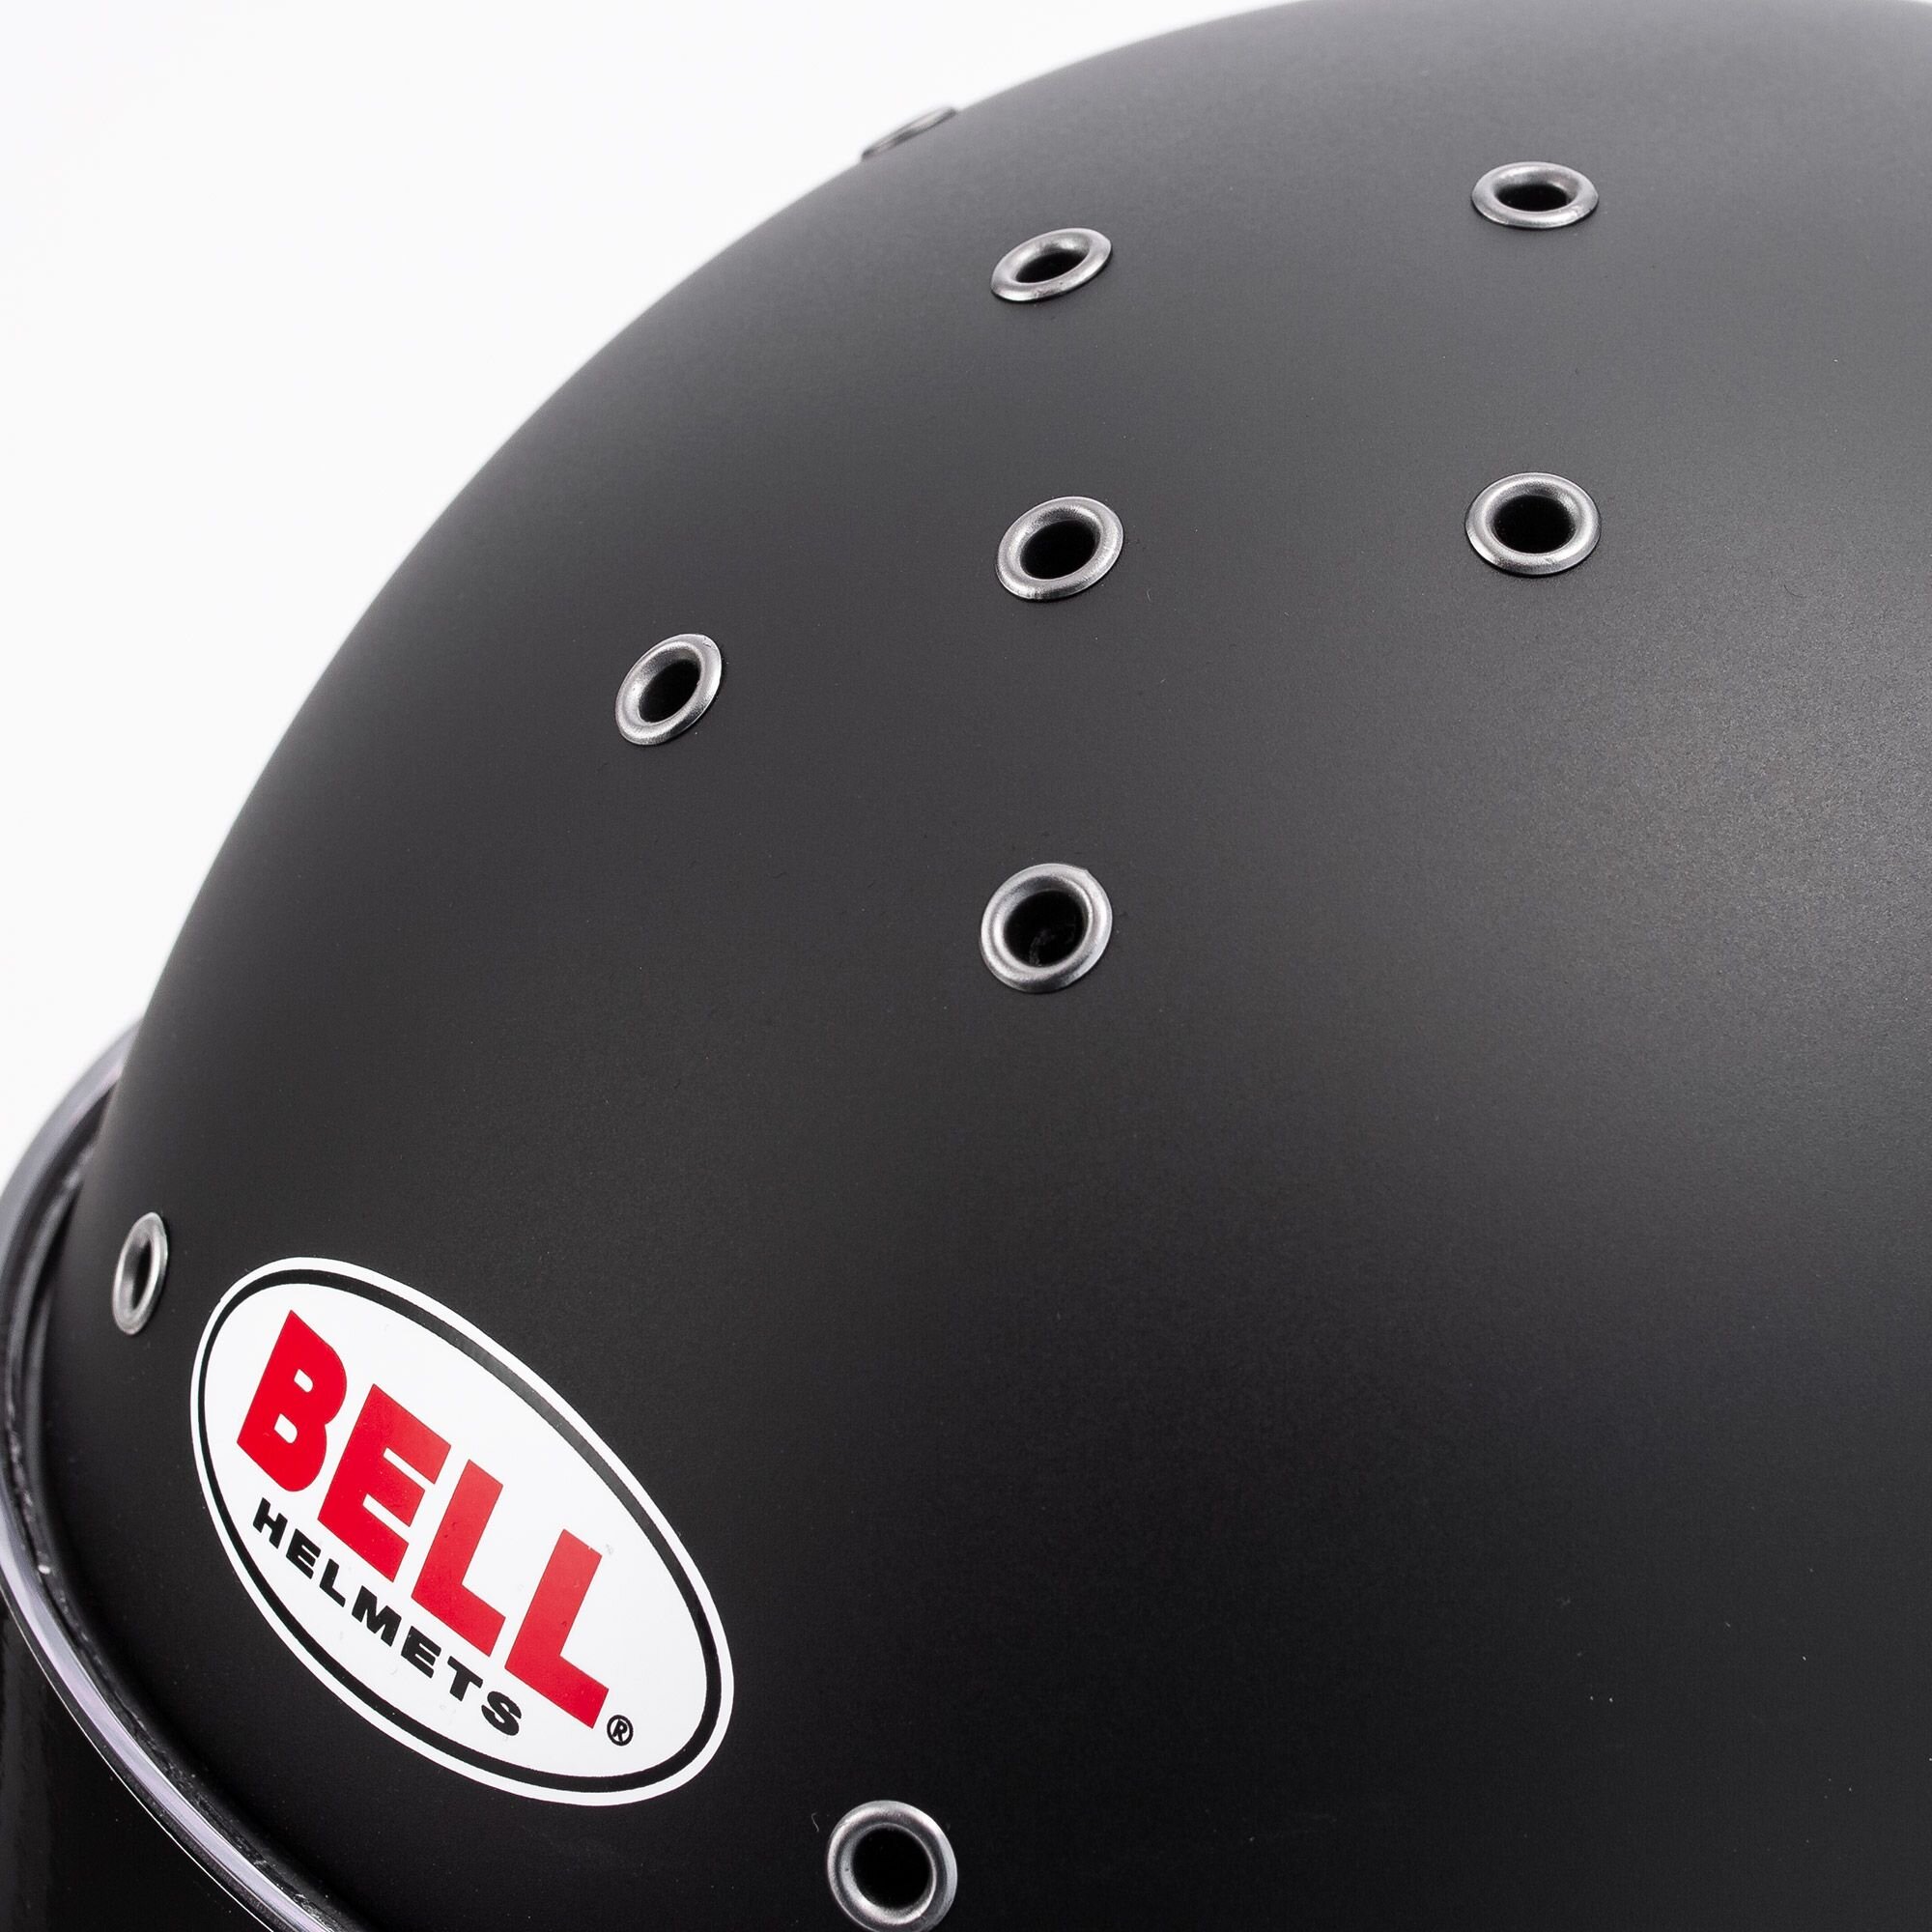 Kypärä Bell RS7 Pro HANS, musta